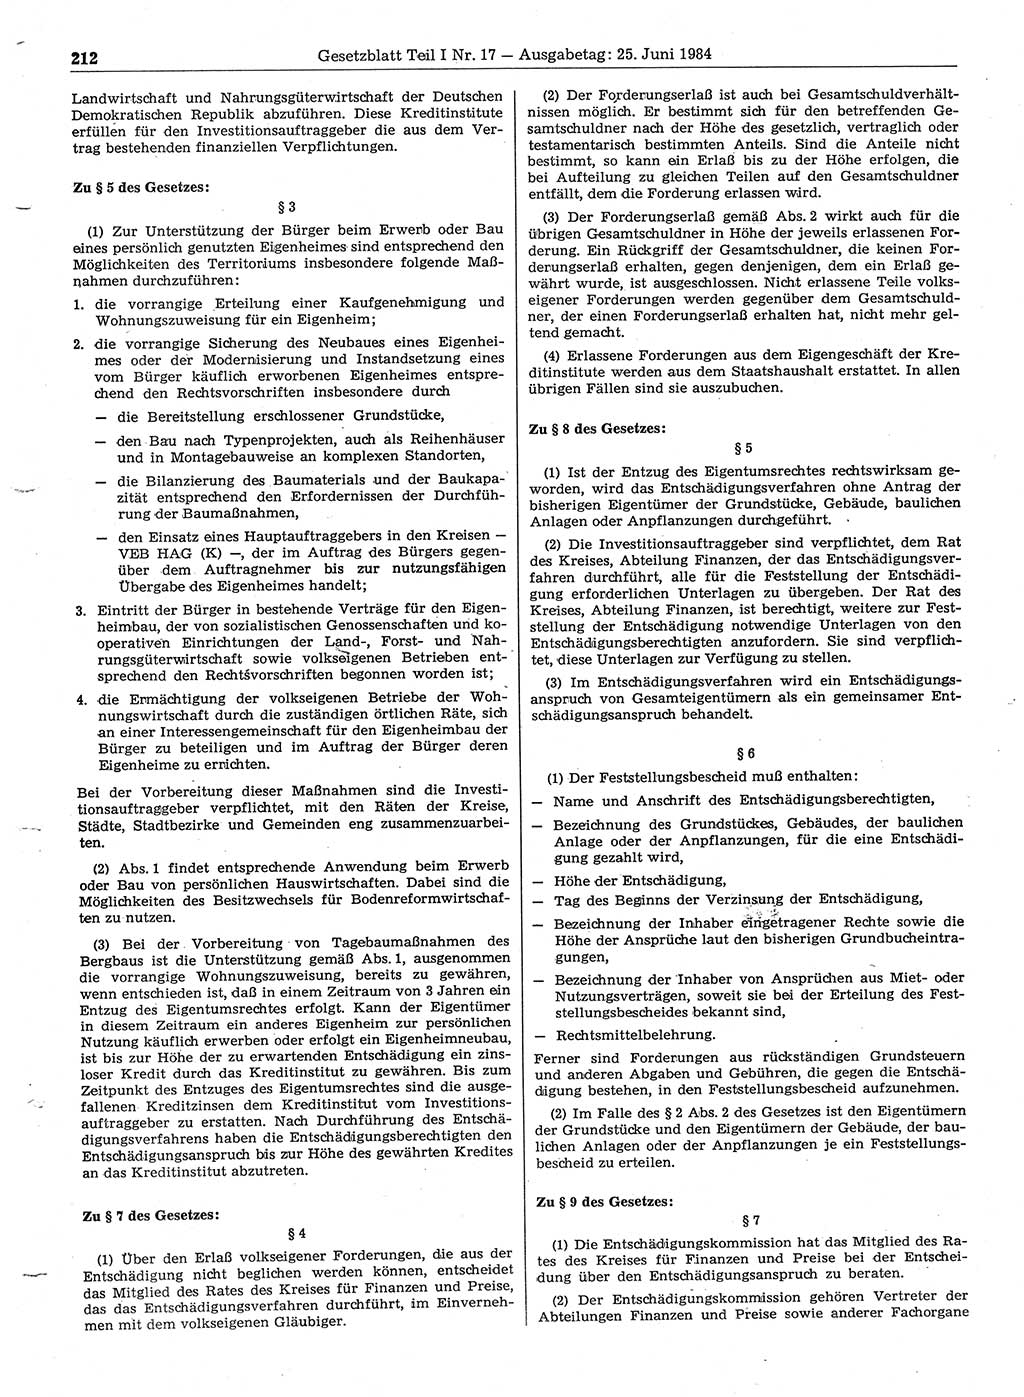 Gesetzblatt (GBl.) der Deutschen Demokratischen Republik (DDR) Teil Ⅰ 1984, Seite 212 (GBl. DDR Ⅰ 1984, S. 212)